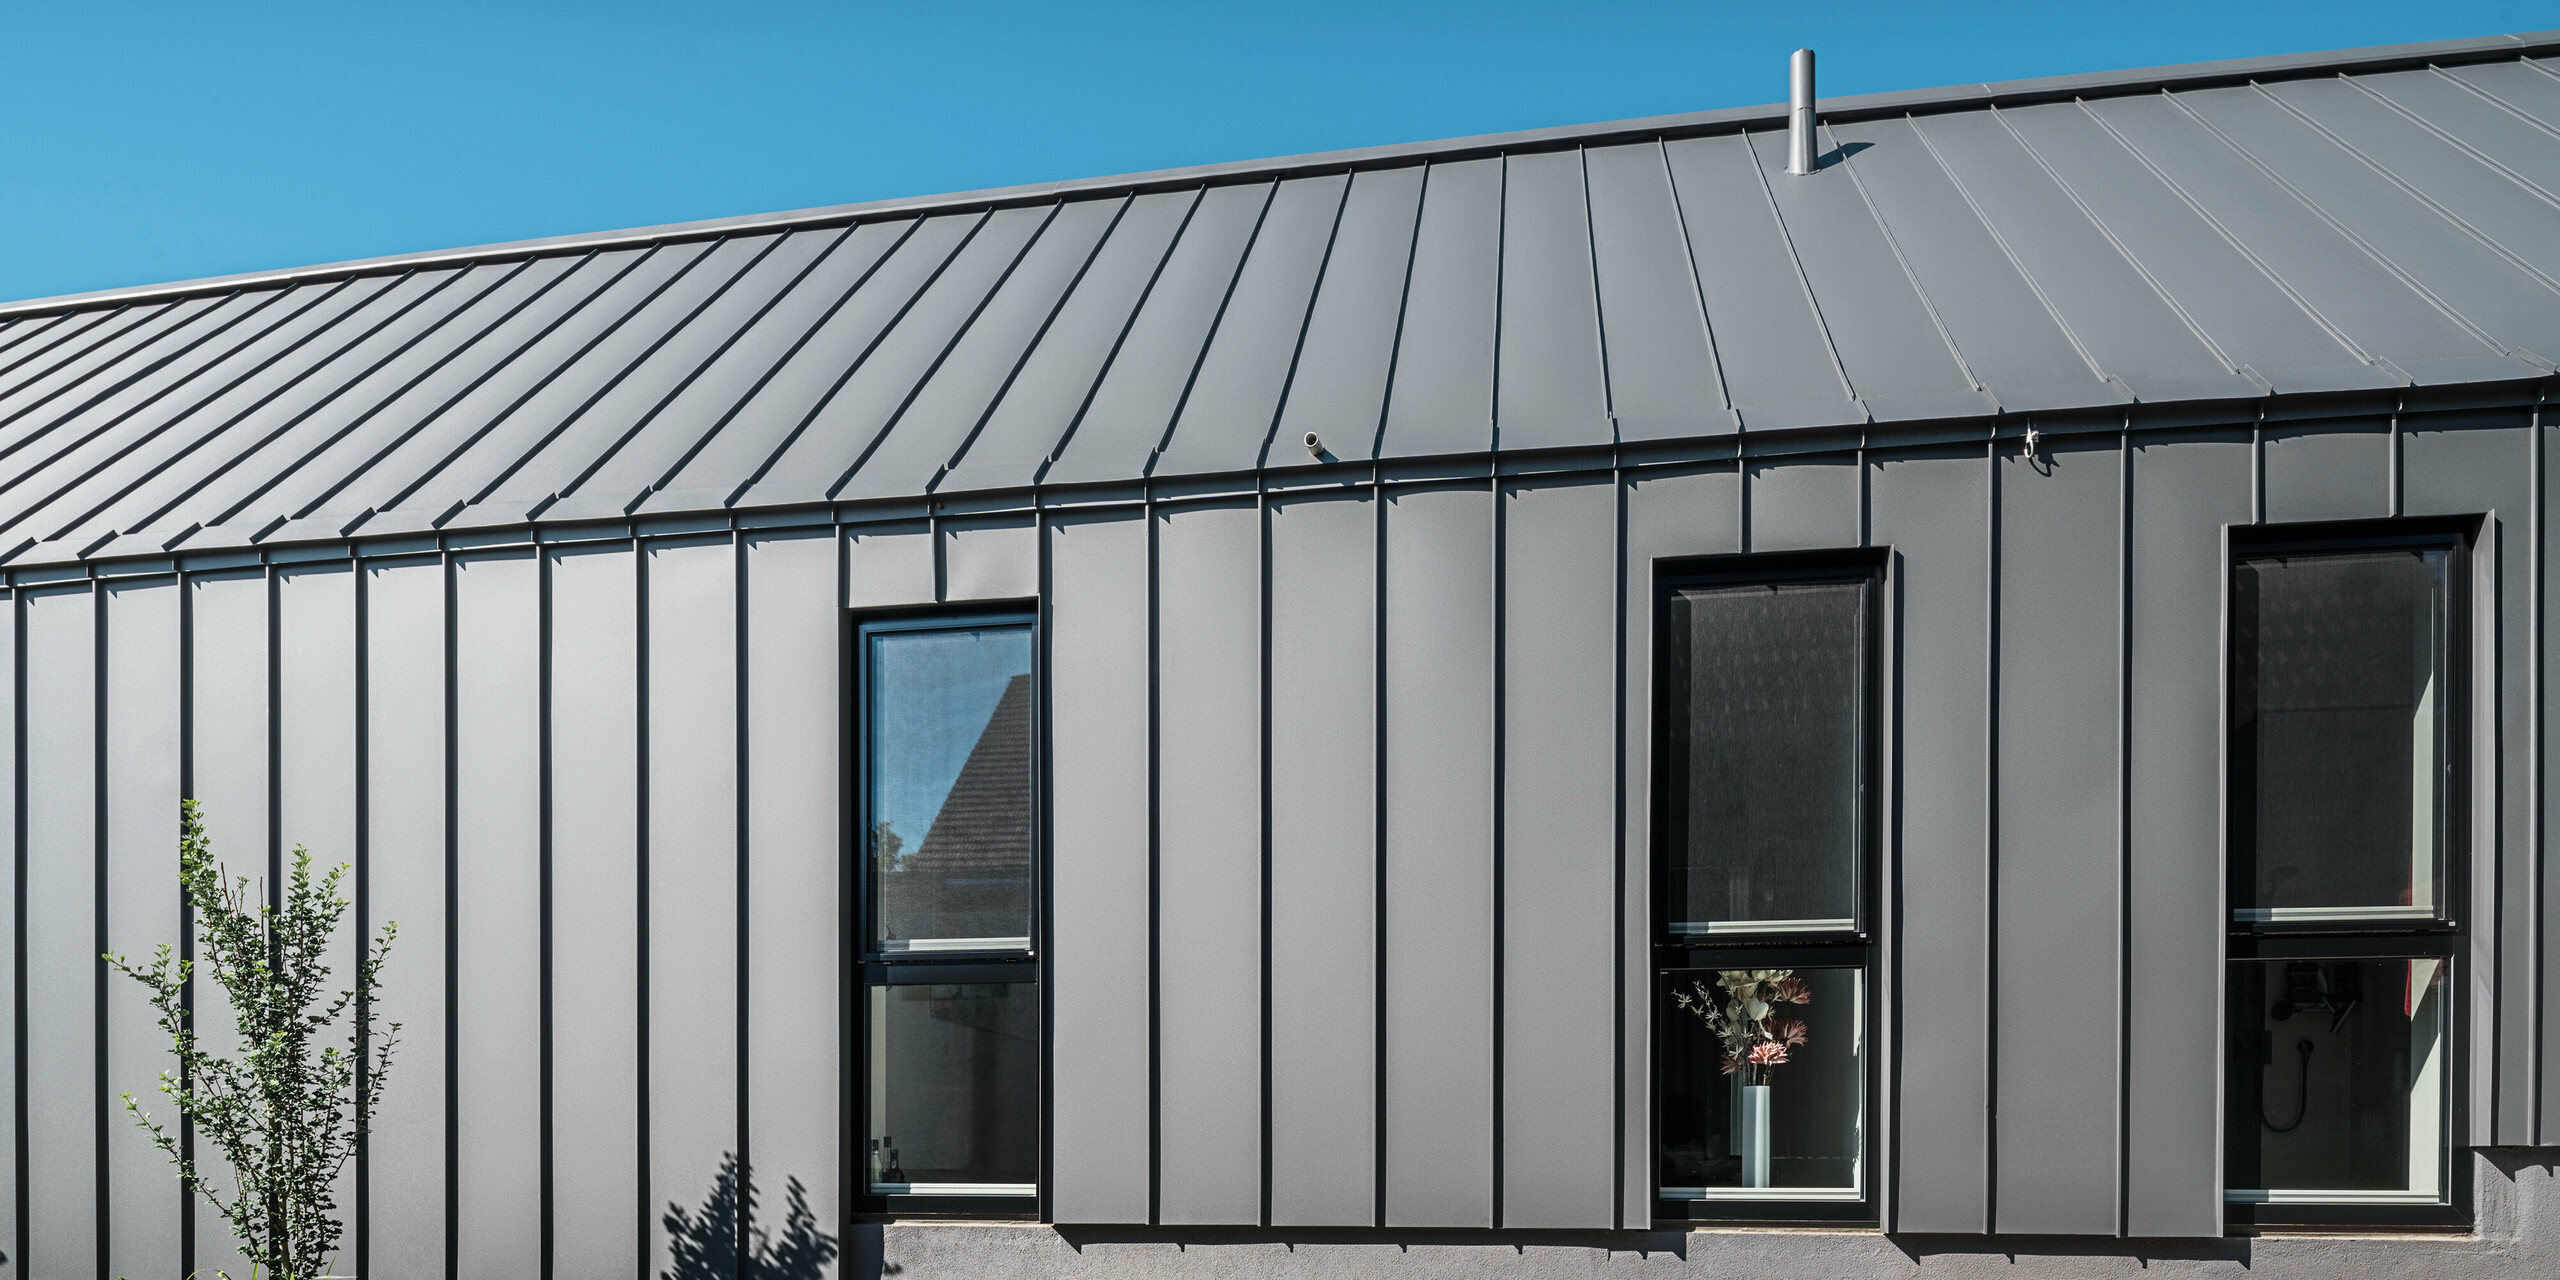 Boční pohled na rodinný dům v rakouském Pogier s odolným a stylovým PREFALZ v barvě P.10 tmavě šedá na střeše a fasádě. Hliníkový obklad se stojatou drážkou nabízí čisté vertikální linie, které elegantně rámují okna a vytvářejí moderní vzhled. Minimalistická architektura se nachází pod jasnou, jasně modrou oblohou.